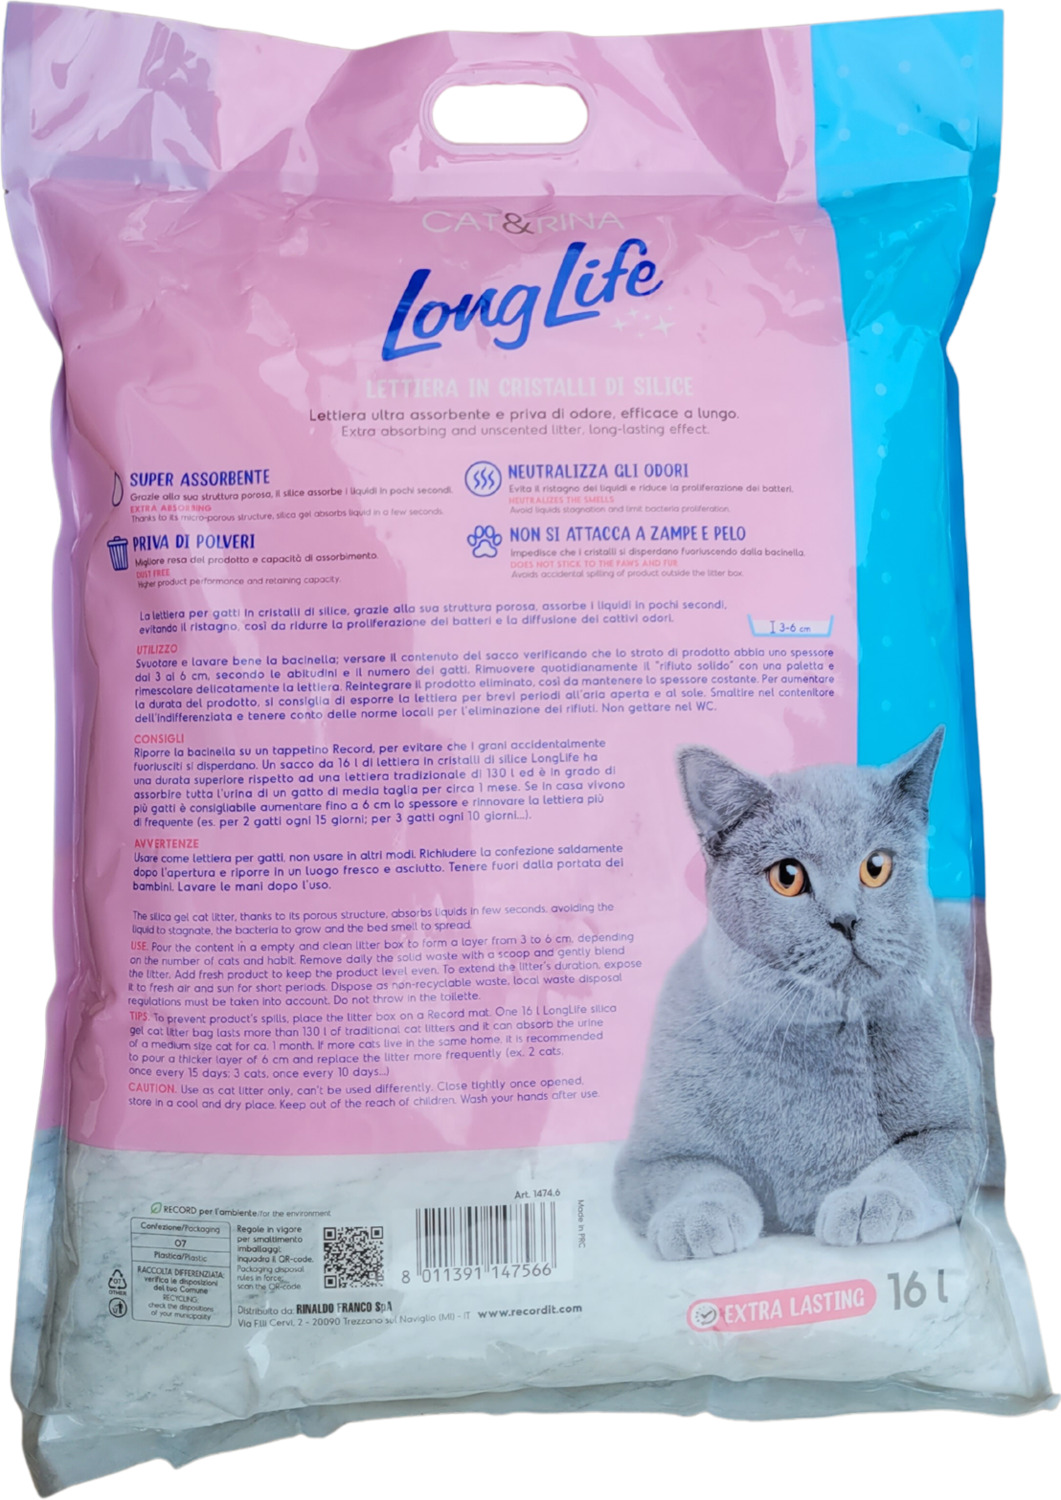 Cat & Rina LongLife așternut silicat pentru pisici - zoom